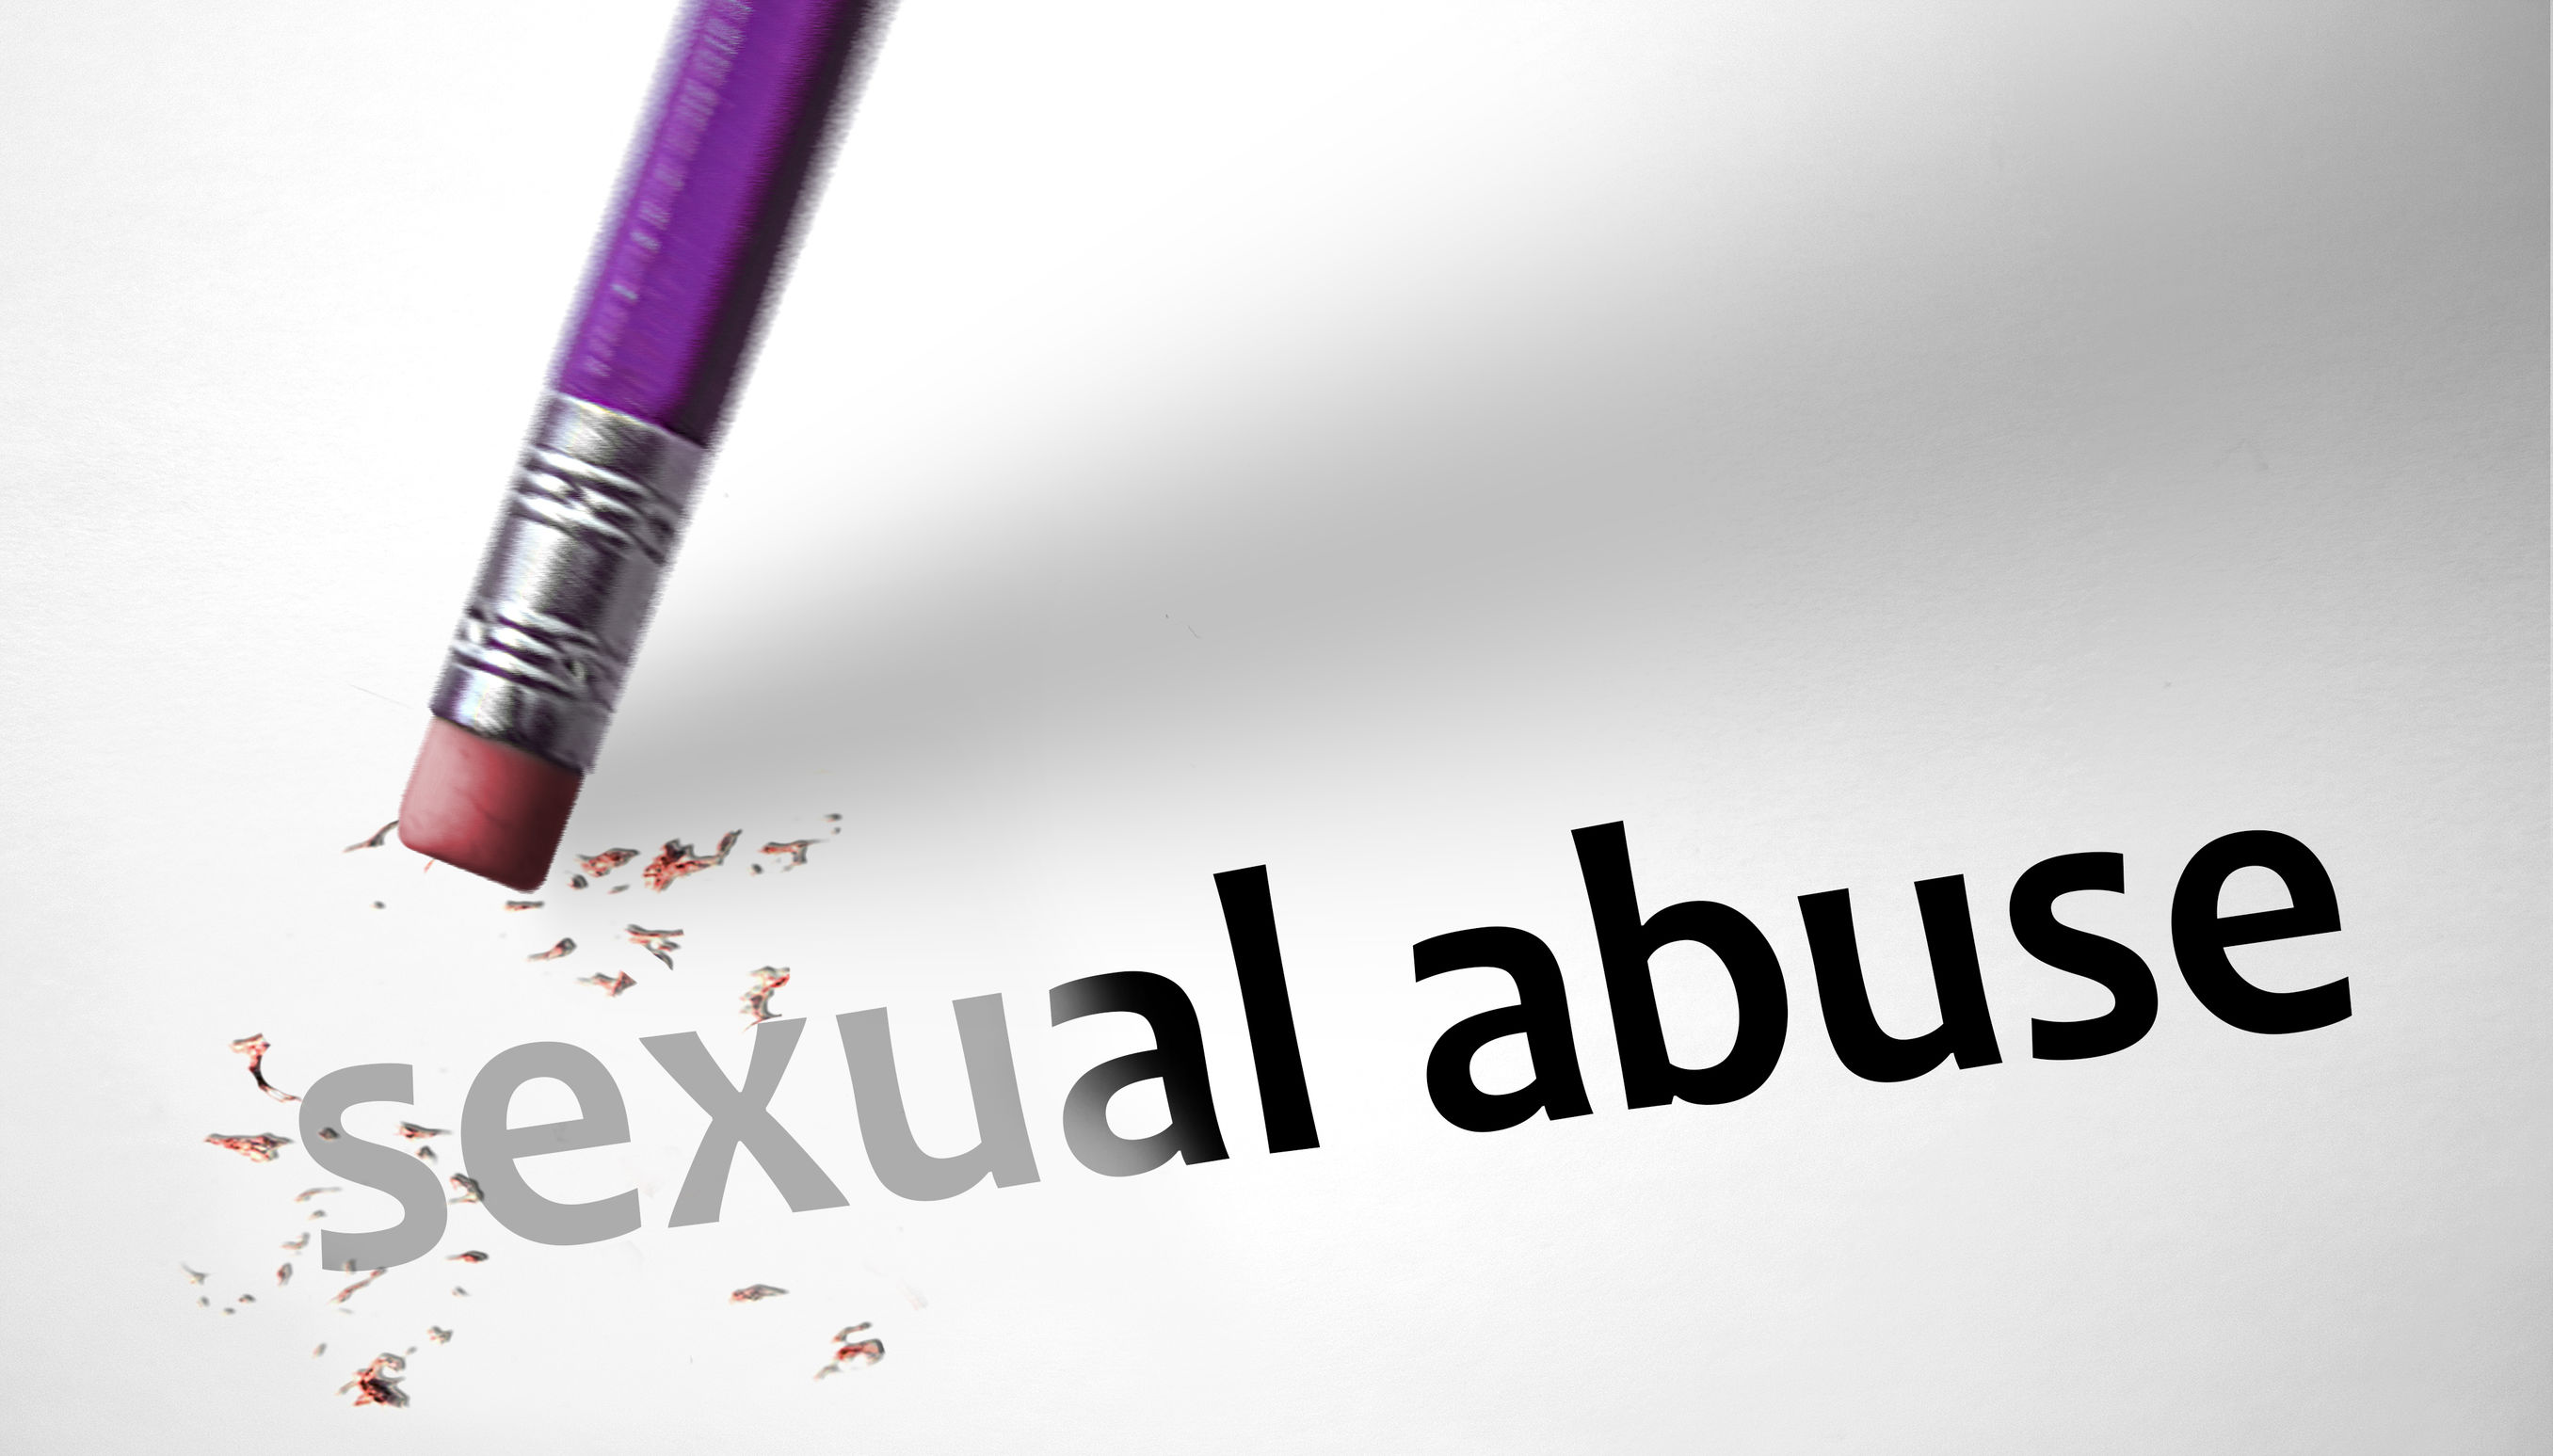 相片：倒轉的鉛筆，有擦膠的一端在擦掉「sexual abuse」（性侵犯）的字樣。